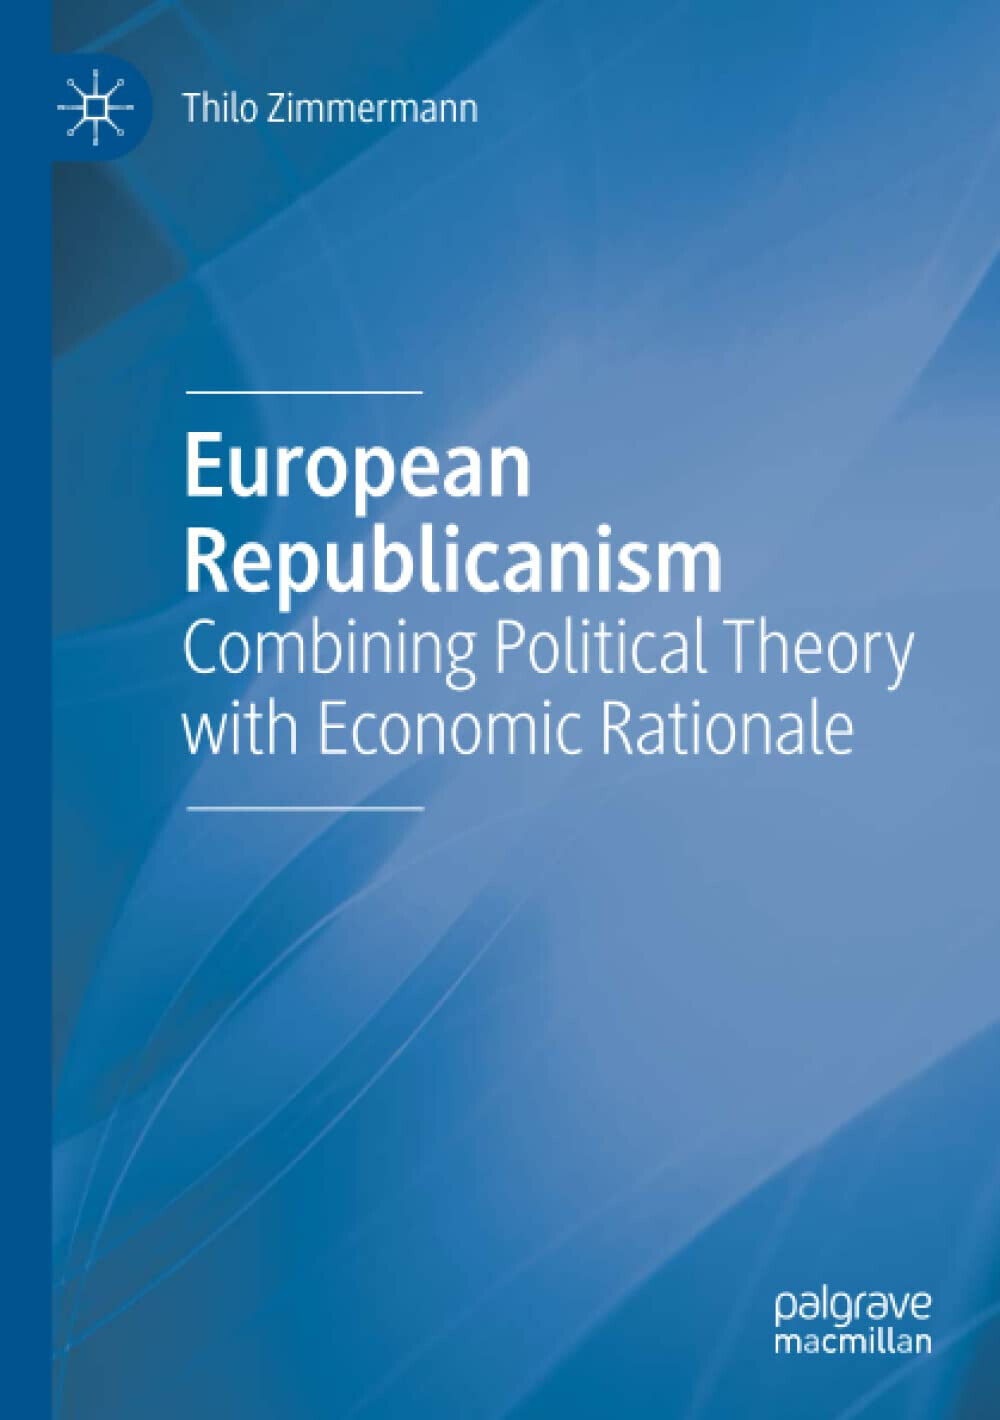 European Republicanism - Thilo Zimmermann - Palgrave, 2020